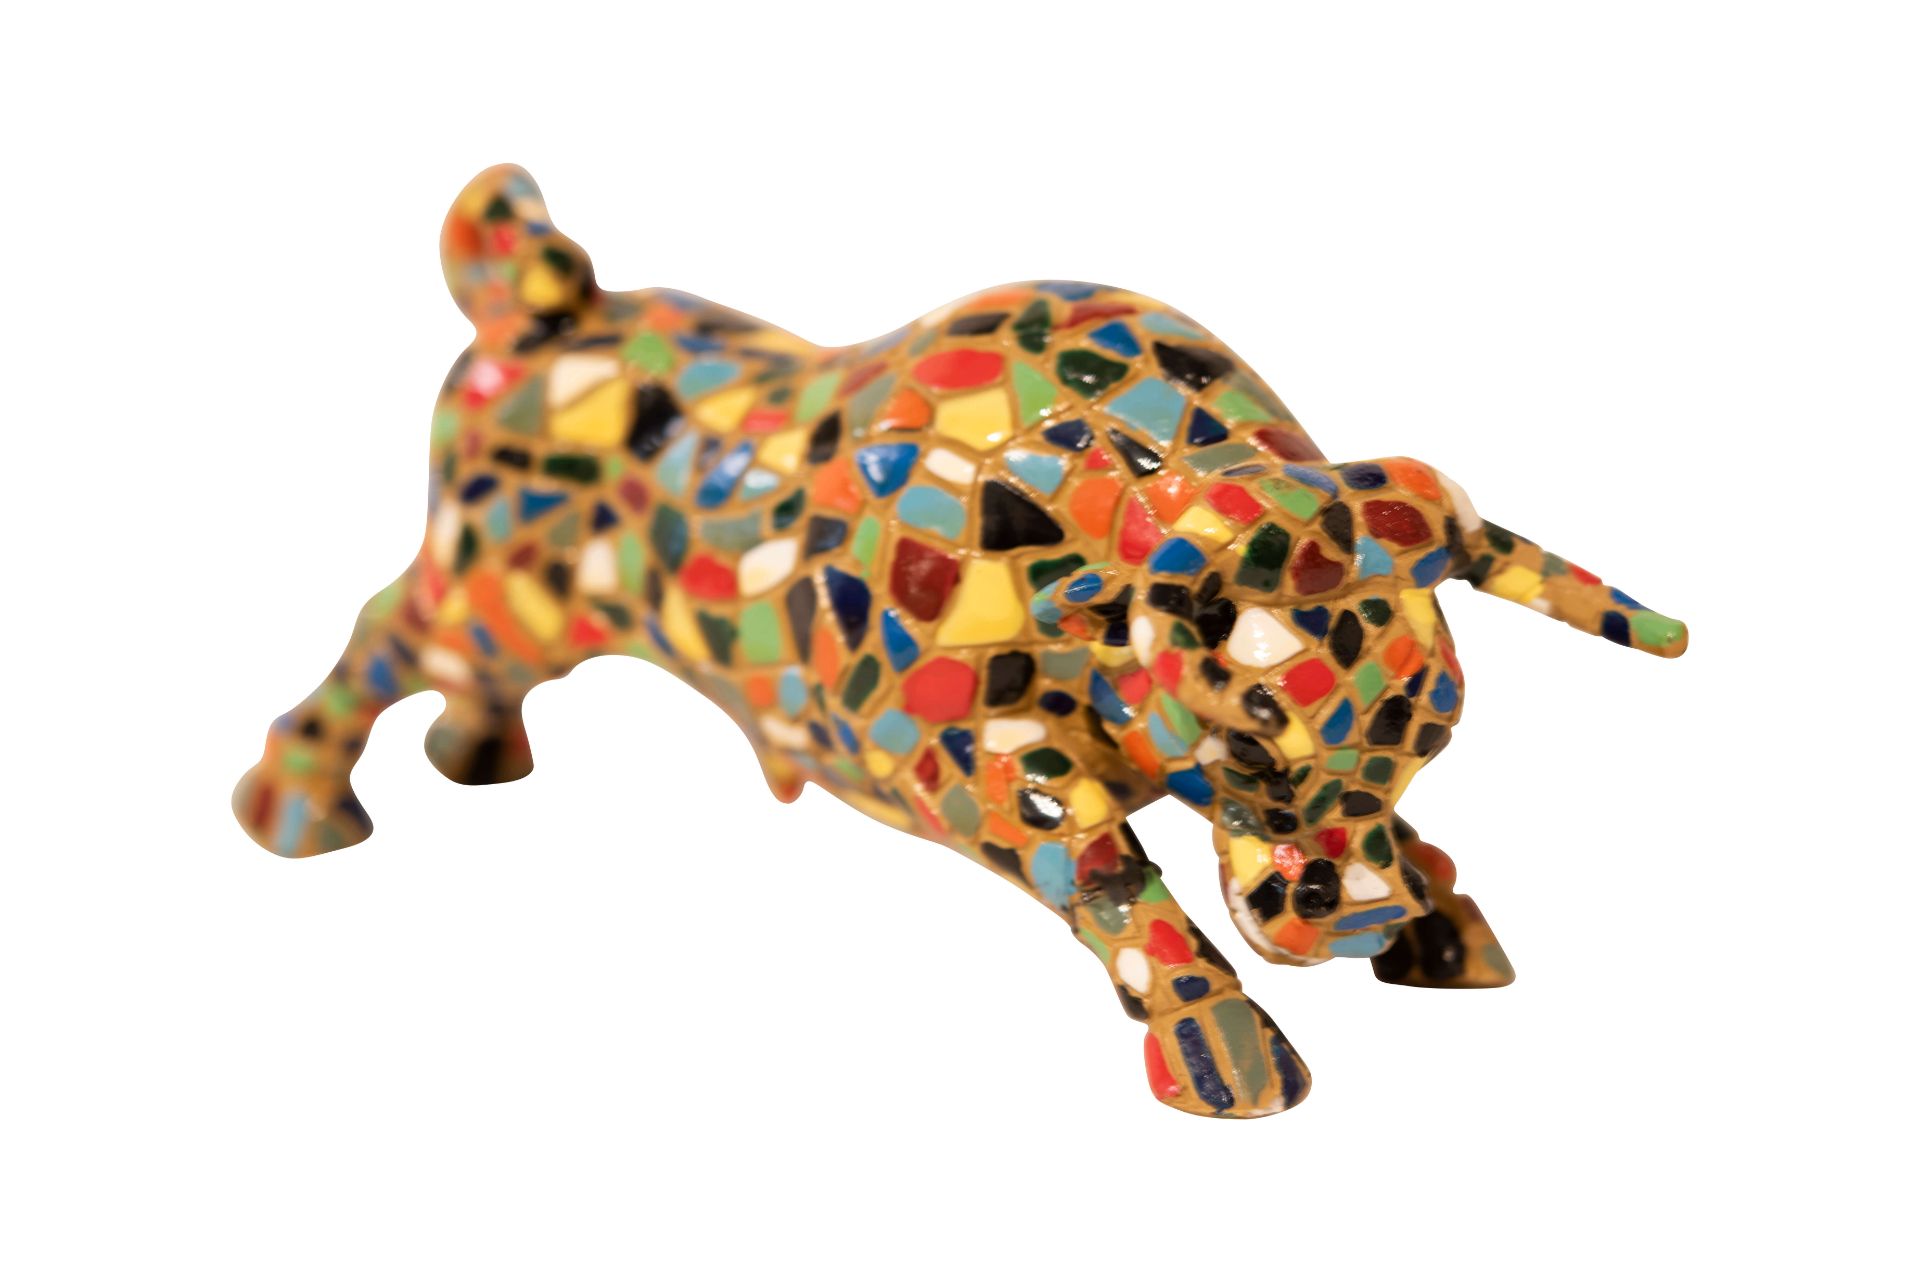 Bunter Keramik Stier, Symbol von Spanien | Colorful Ceramic Bull, Symbol of Spain - Image 4 of 5